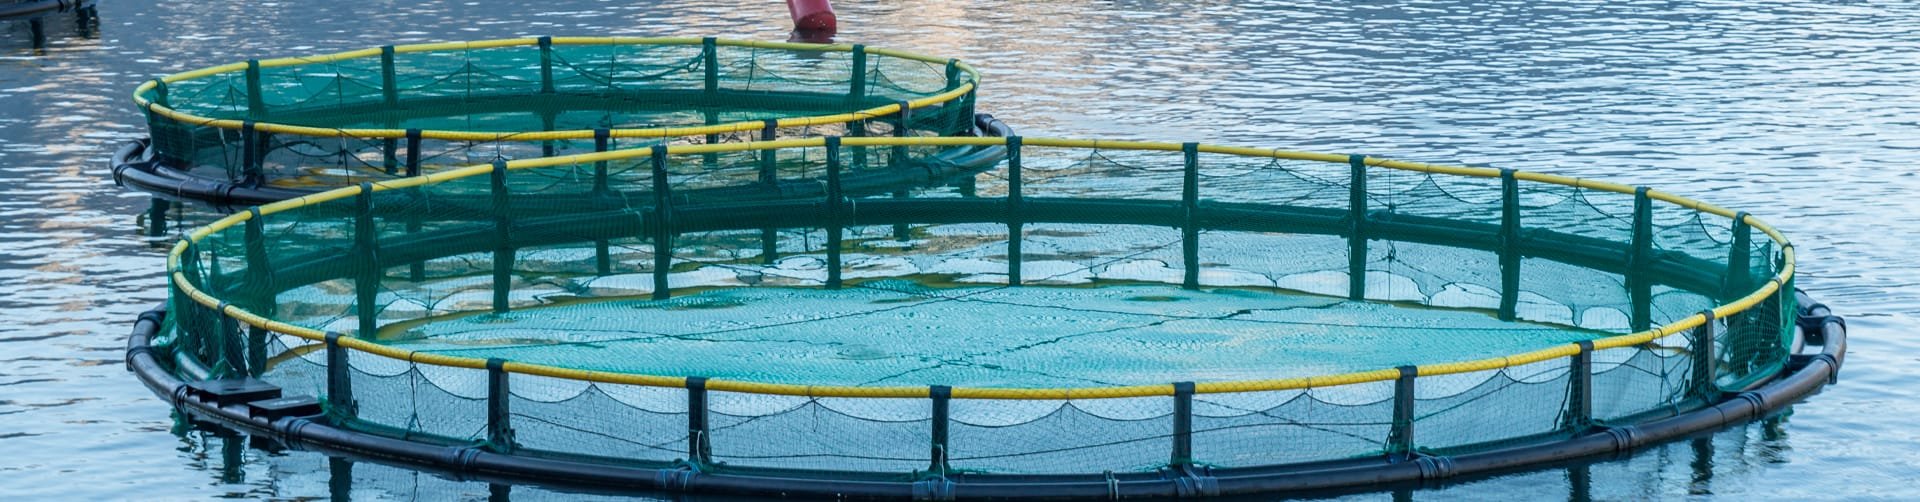 Netze für Aquakultur | Cittadini